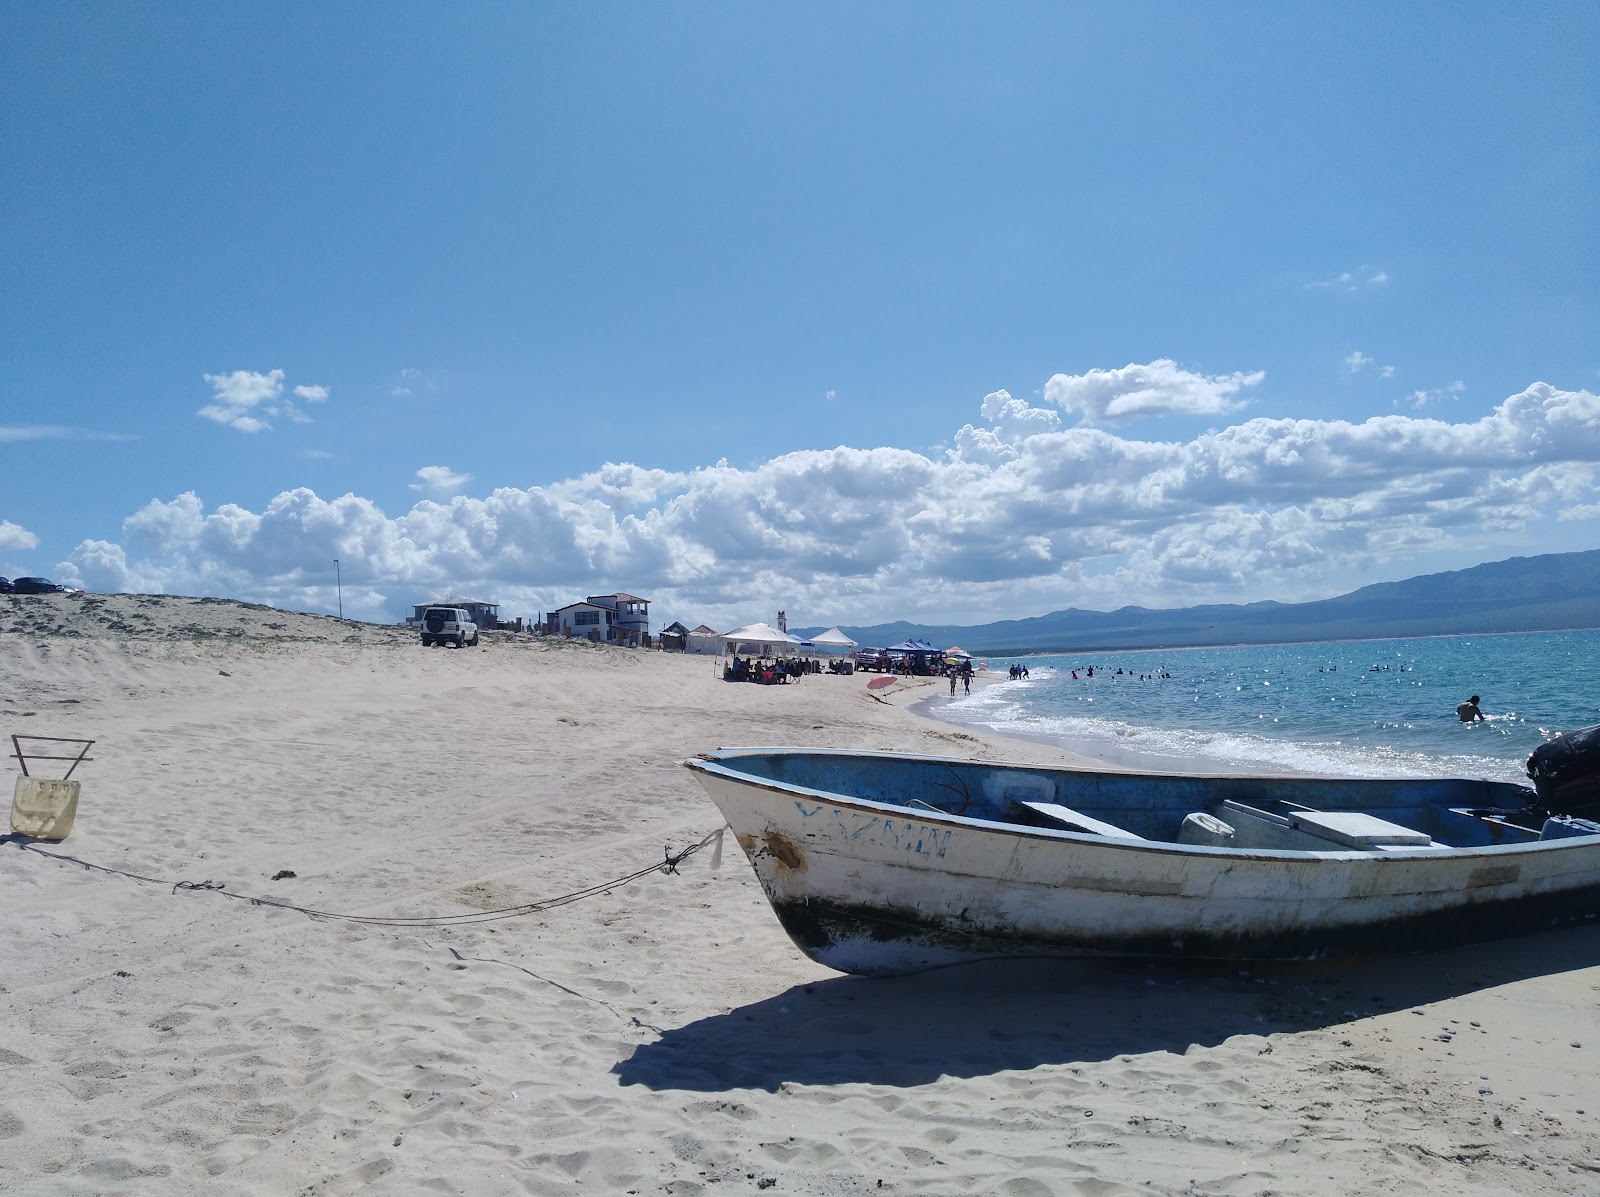 Playa Turquesa'in fotoğrafı vahşi alan